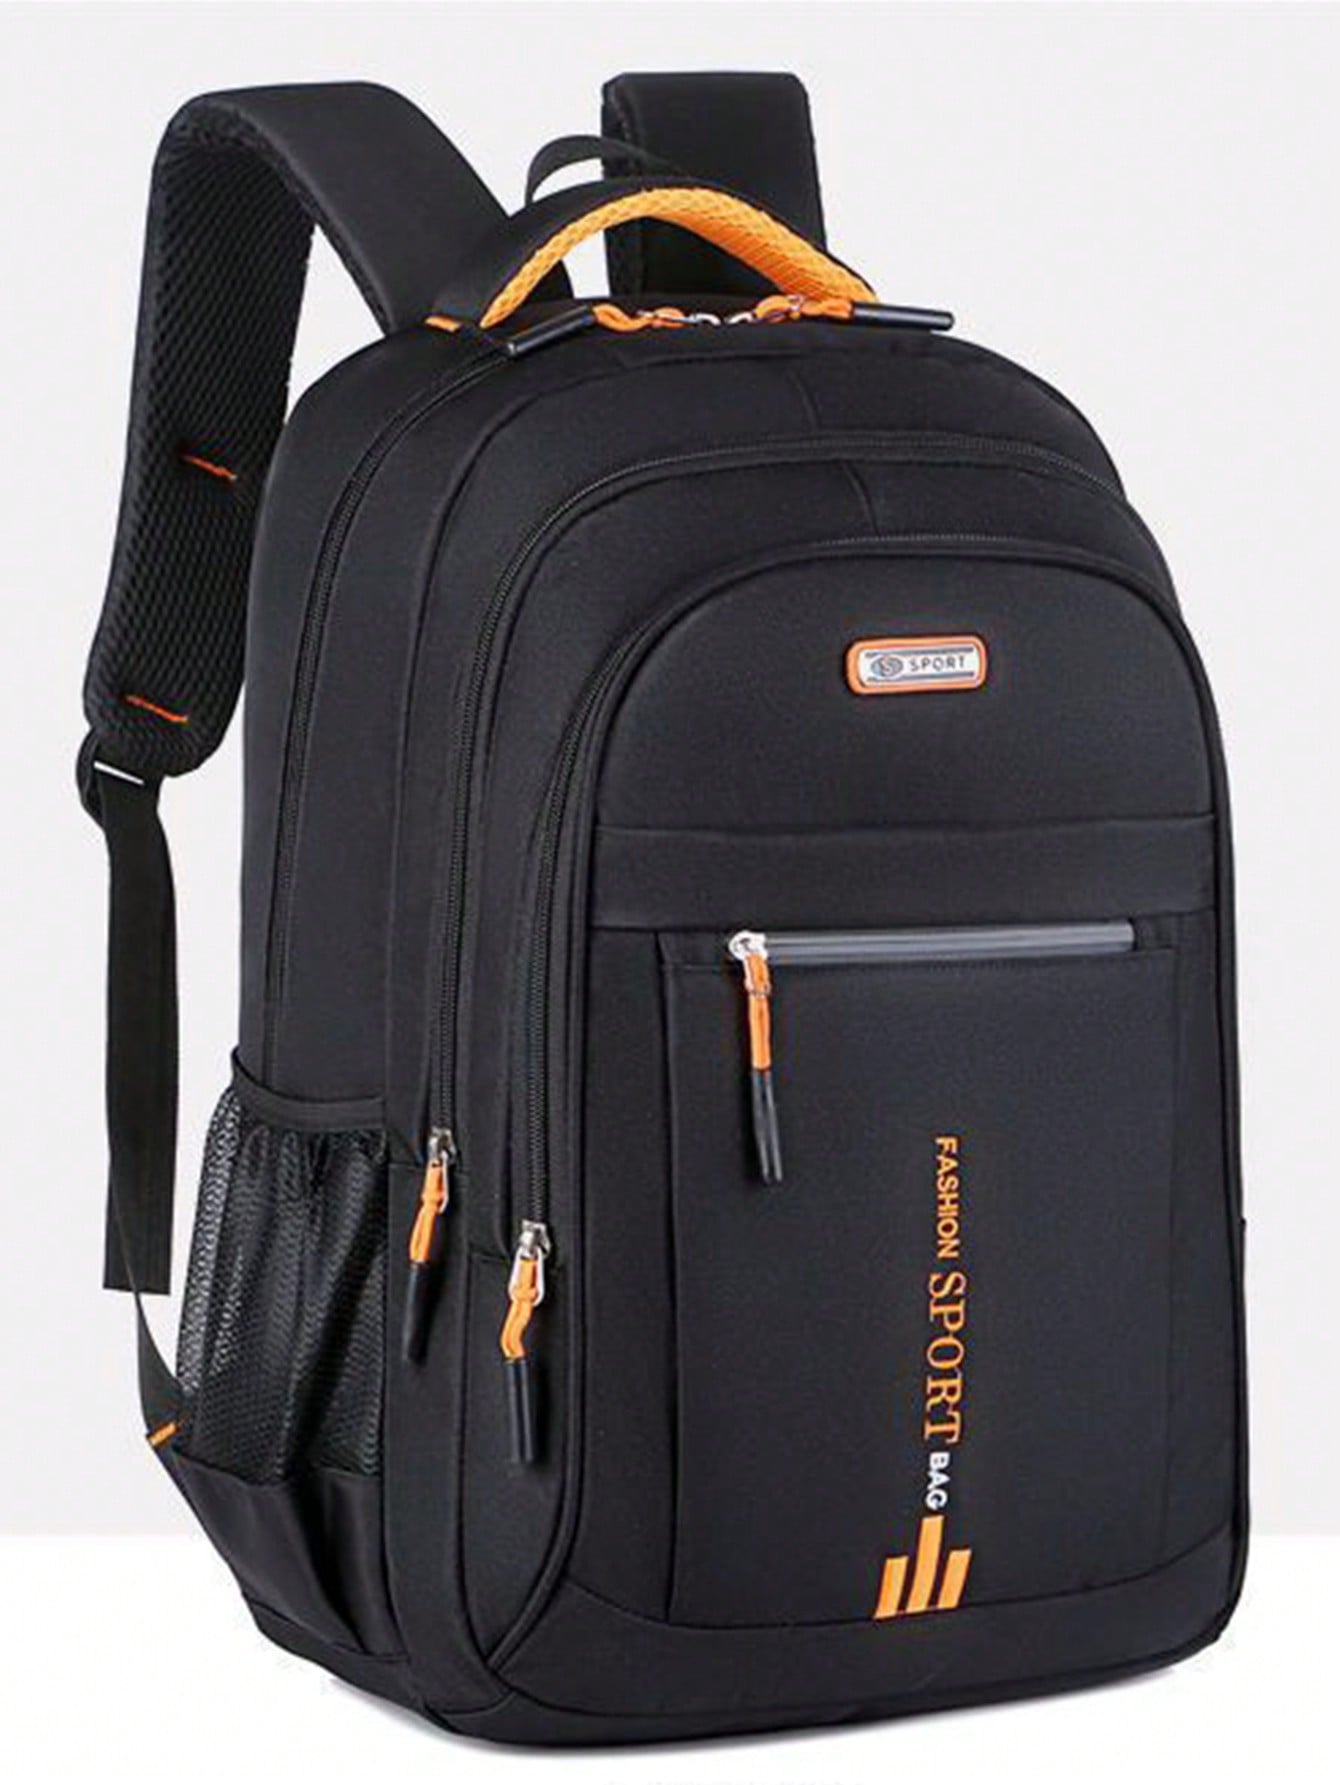 Рюкзак для выездного рабочего багажа, многоцветный мужской кожаный дорожный рюкзак 9240 блек